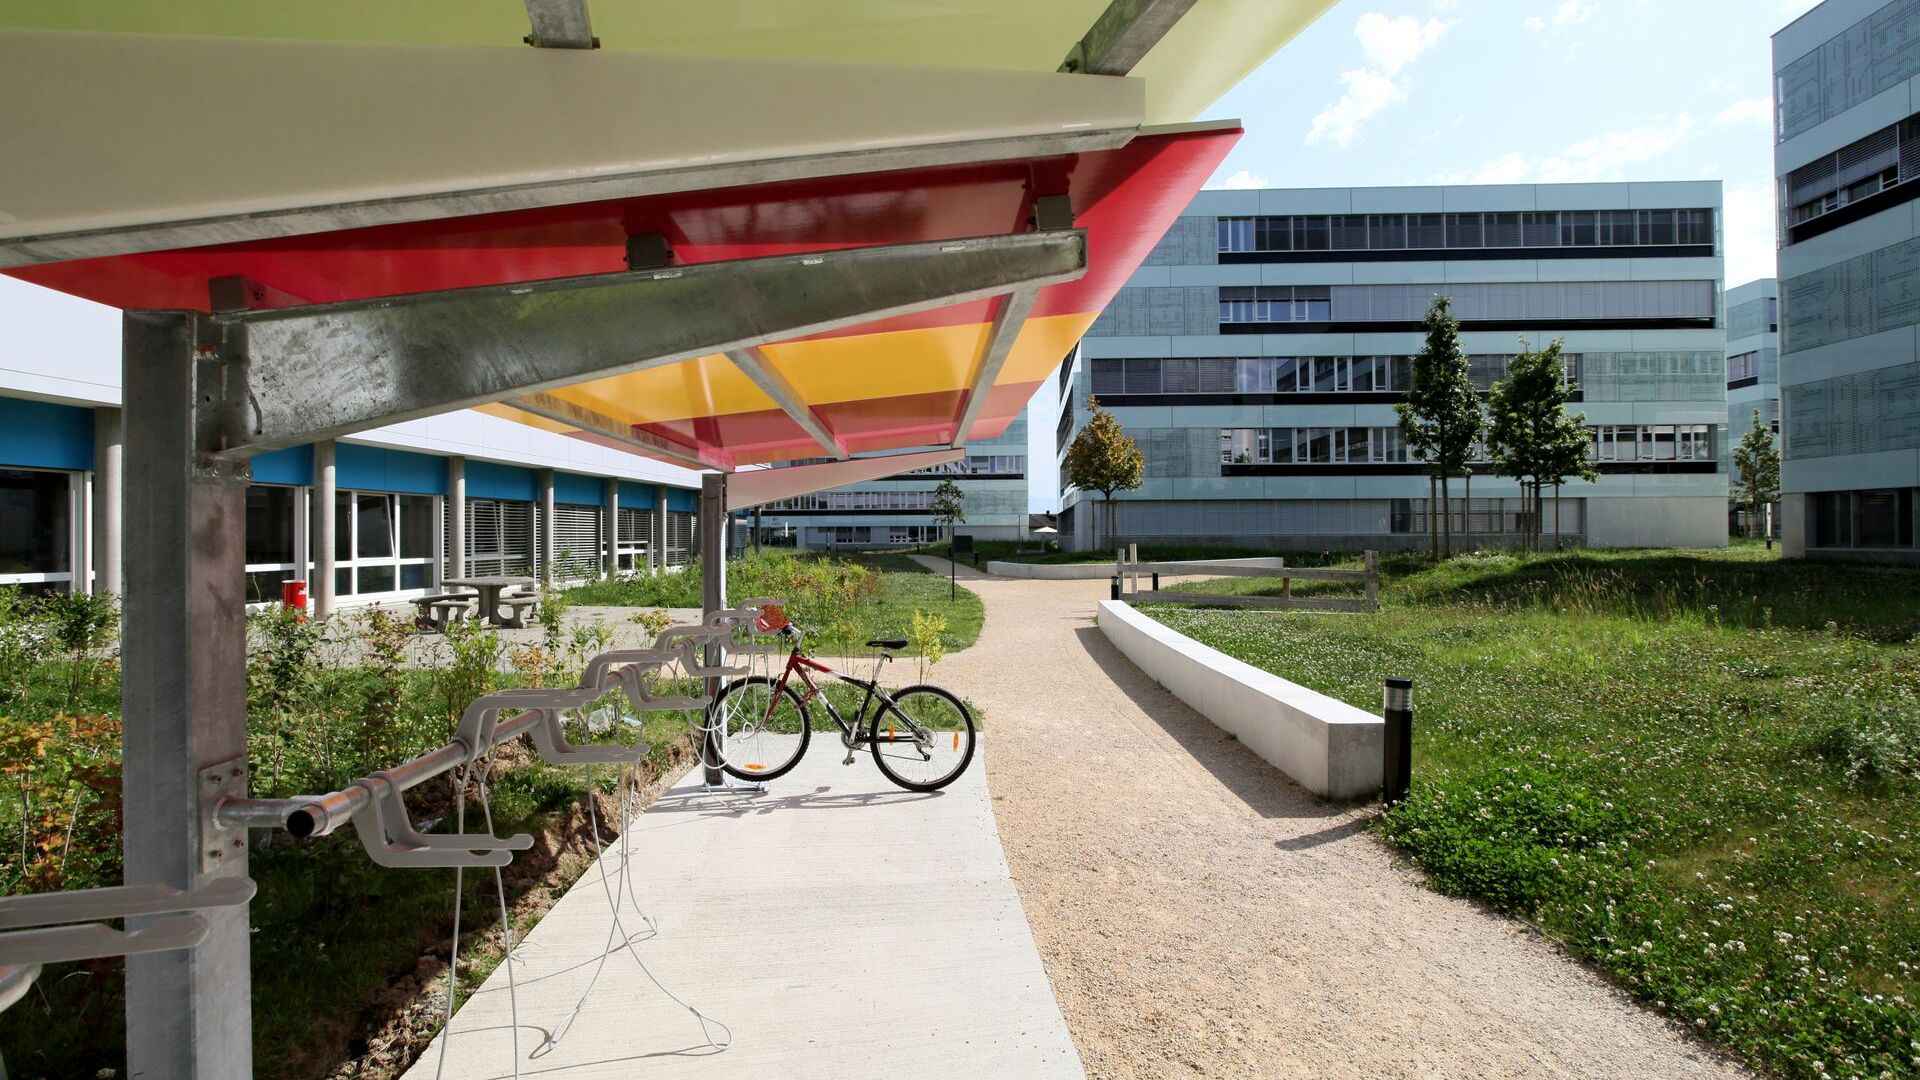 L'EPFL Innovation Park è l'incubatore d'impresa dedicato alle start-up studentesche creato nell’ambito del Politecnico Federale di Losanna: dal 1997, sono state create in media ogni anno dodici start-up composte da studenti e docenti dell'EPFL, che nel 2013 hanno ricevuto un budget di 105 milioni di franchi svizzeri